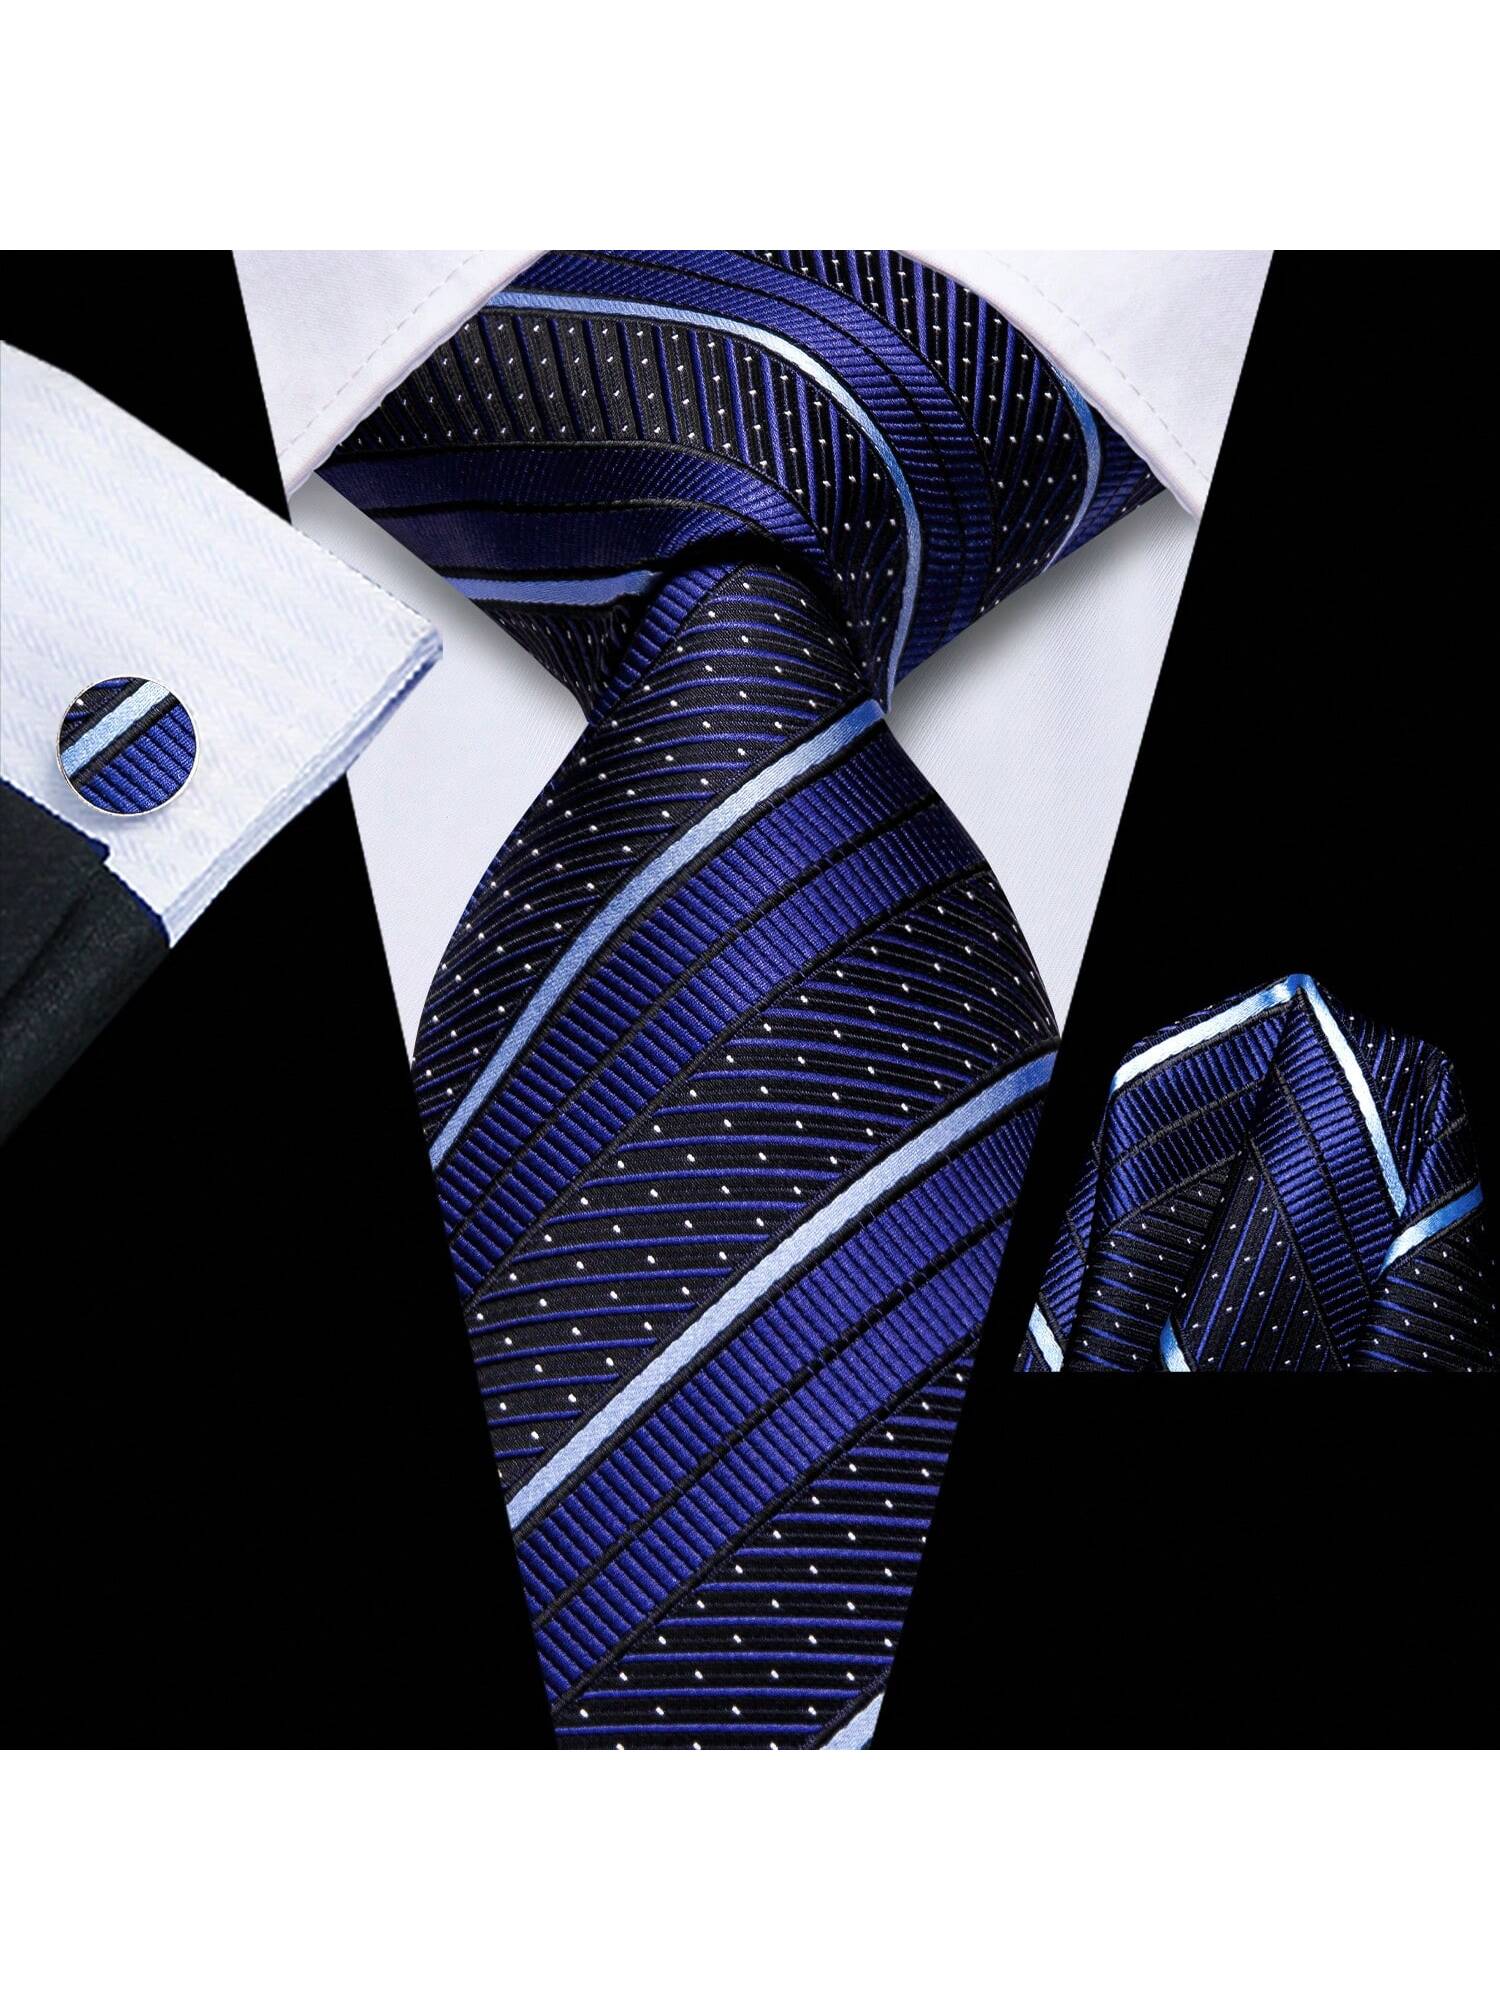 Шелковый мужской галстук Hi-Tie, темно-синий подарочная упаковка мужской брендовый роскошный галстук свадебный квадратный карманный мужские галстуки шелковый галстук набор запоно